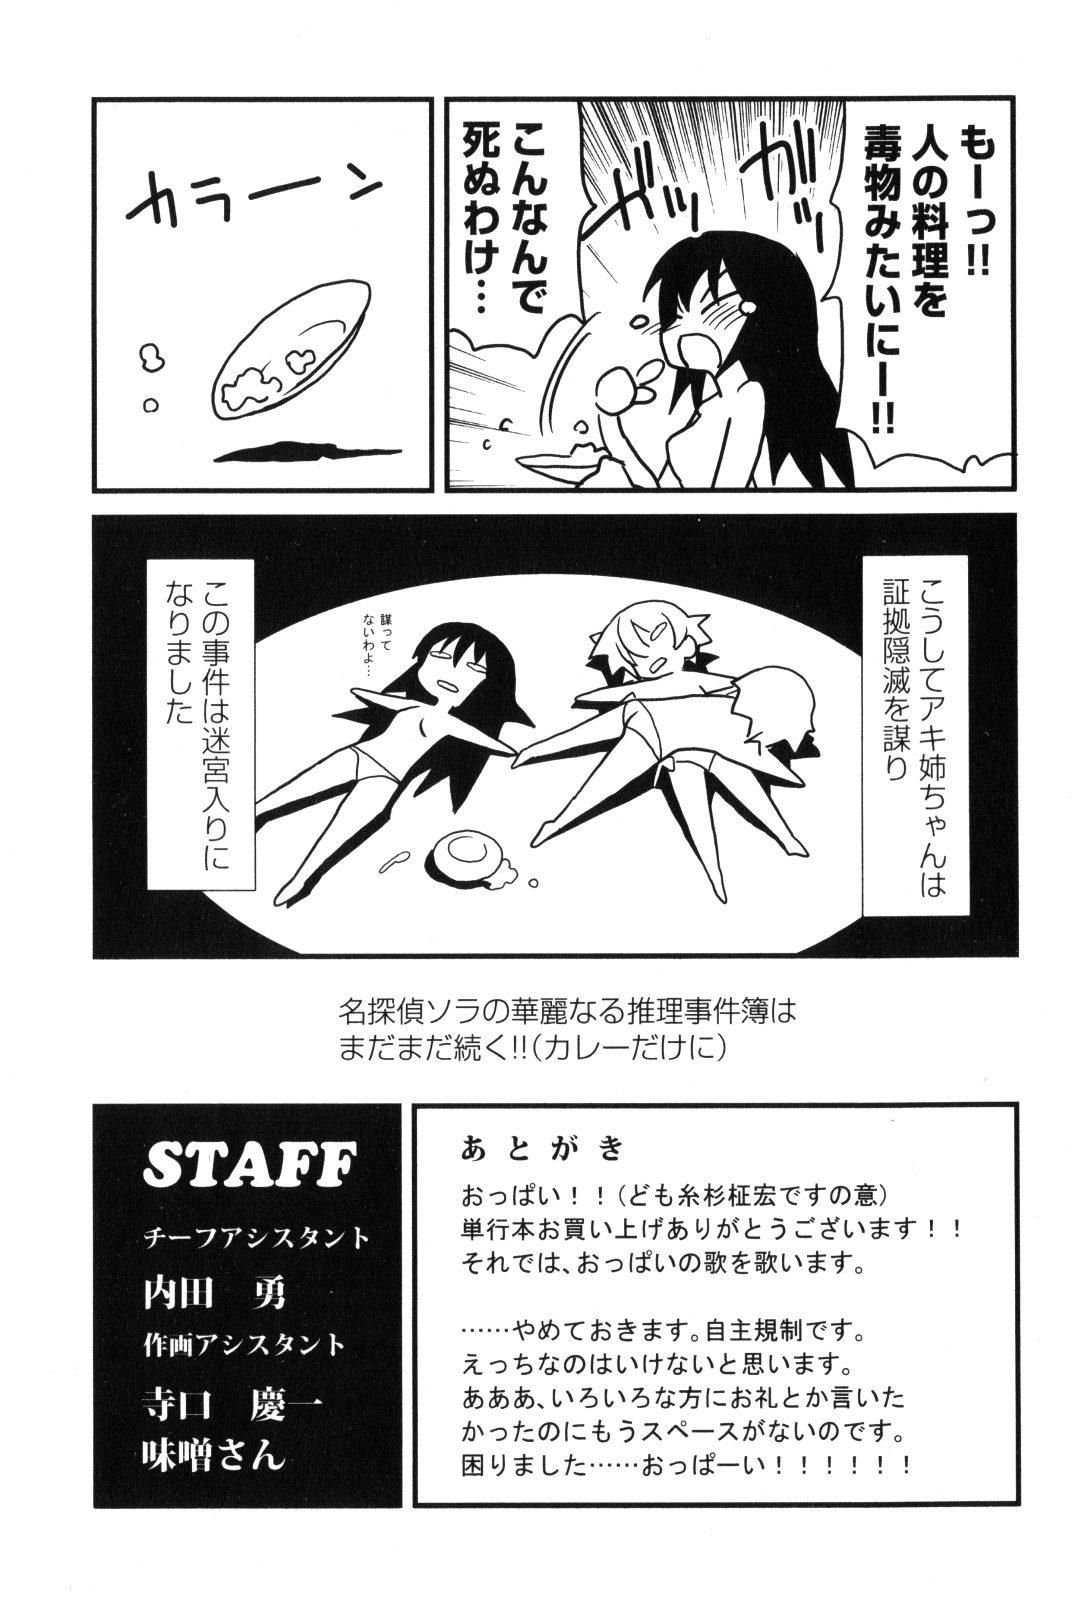 Arabe Aki Sora - Volume 2 - Aki sora Speculum - Page 192